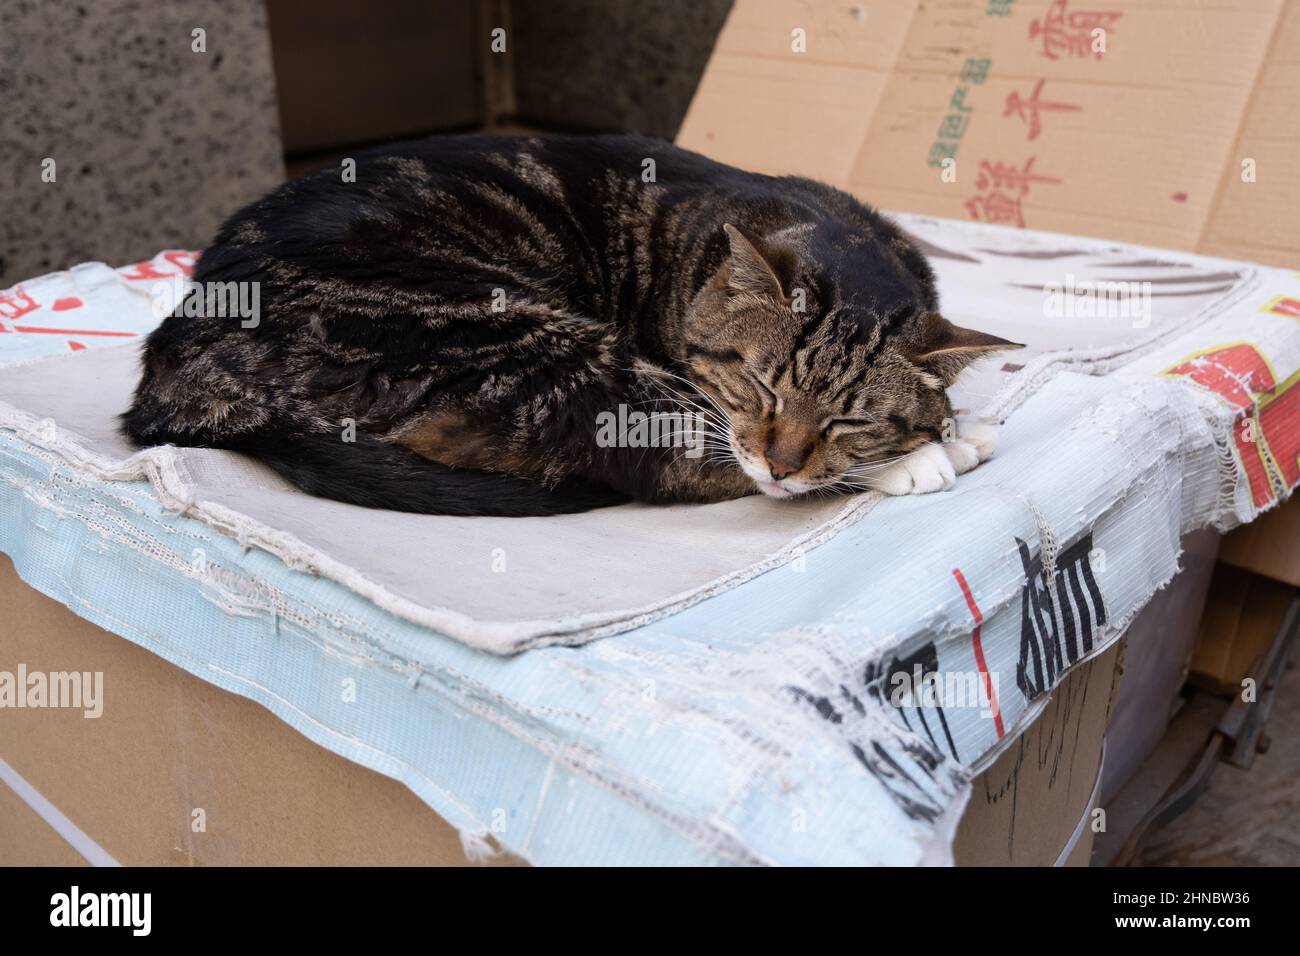 Cat fait une sieste sur les journaux au-dessus de la boîte en carton Banque D'Images